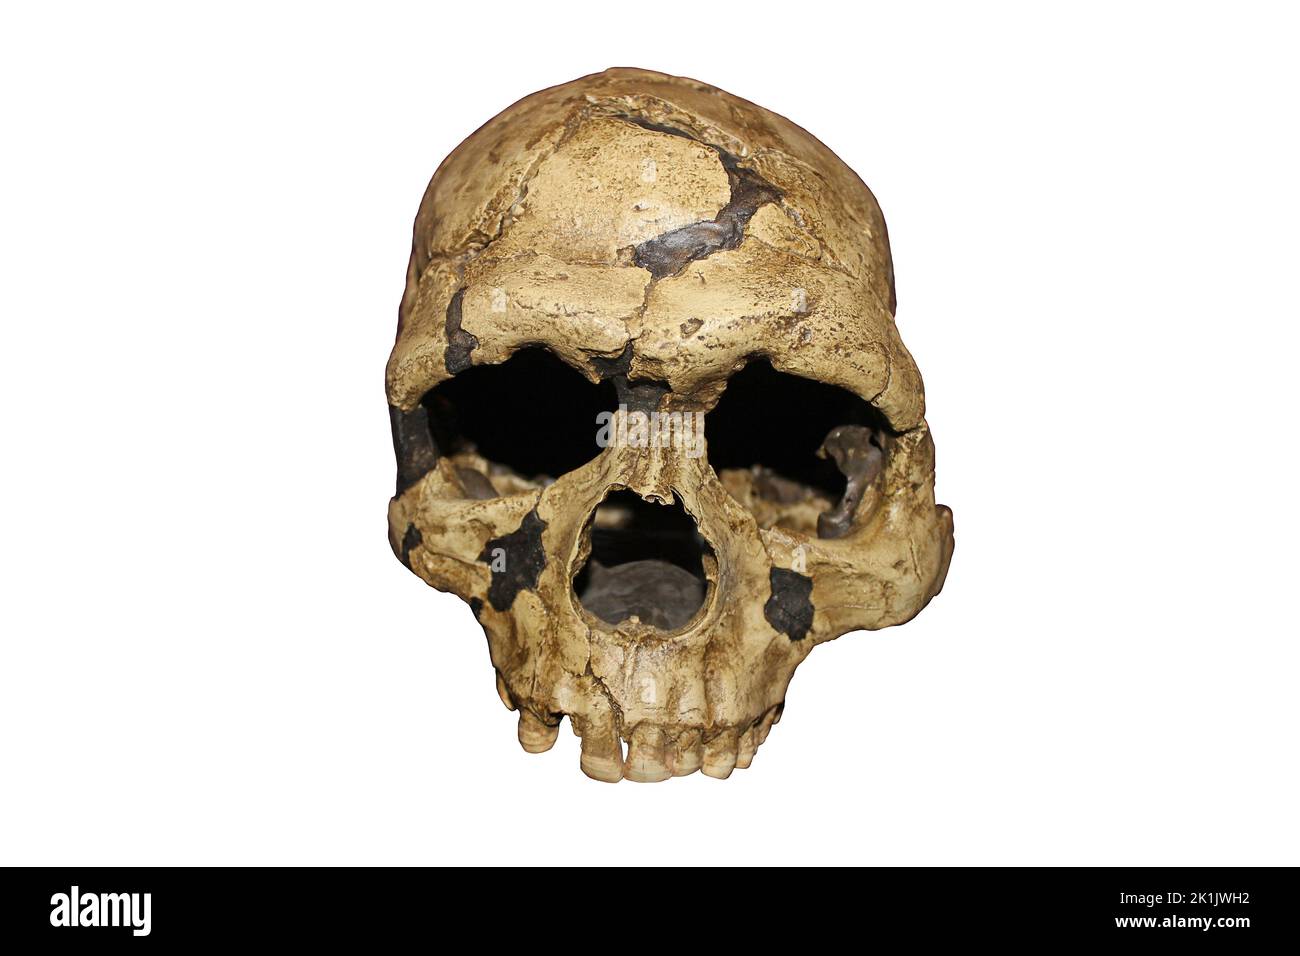 Homo sapiens crâne jeune adulte grotte de Qafzeh, Israël - Qafzeh 6 Banque D'Images